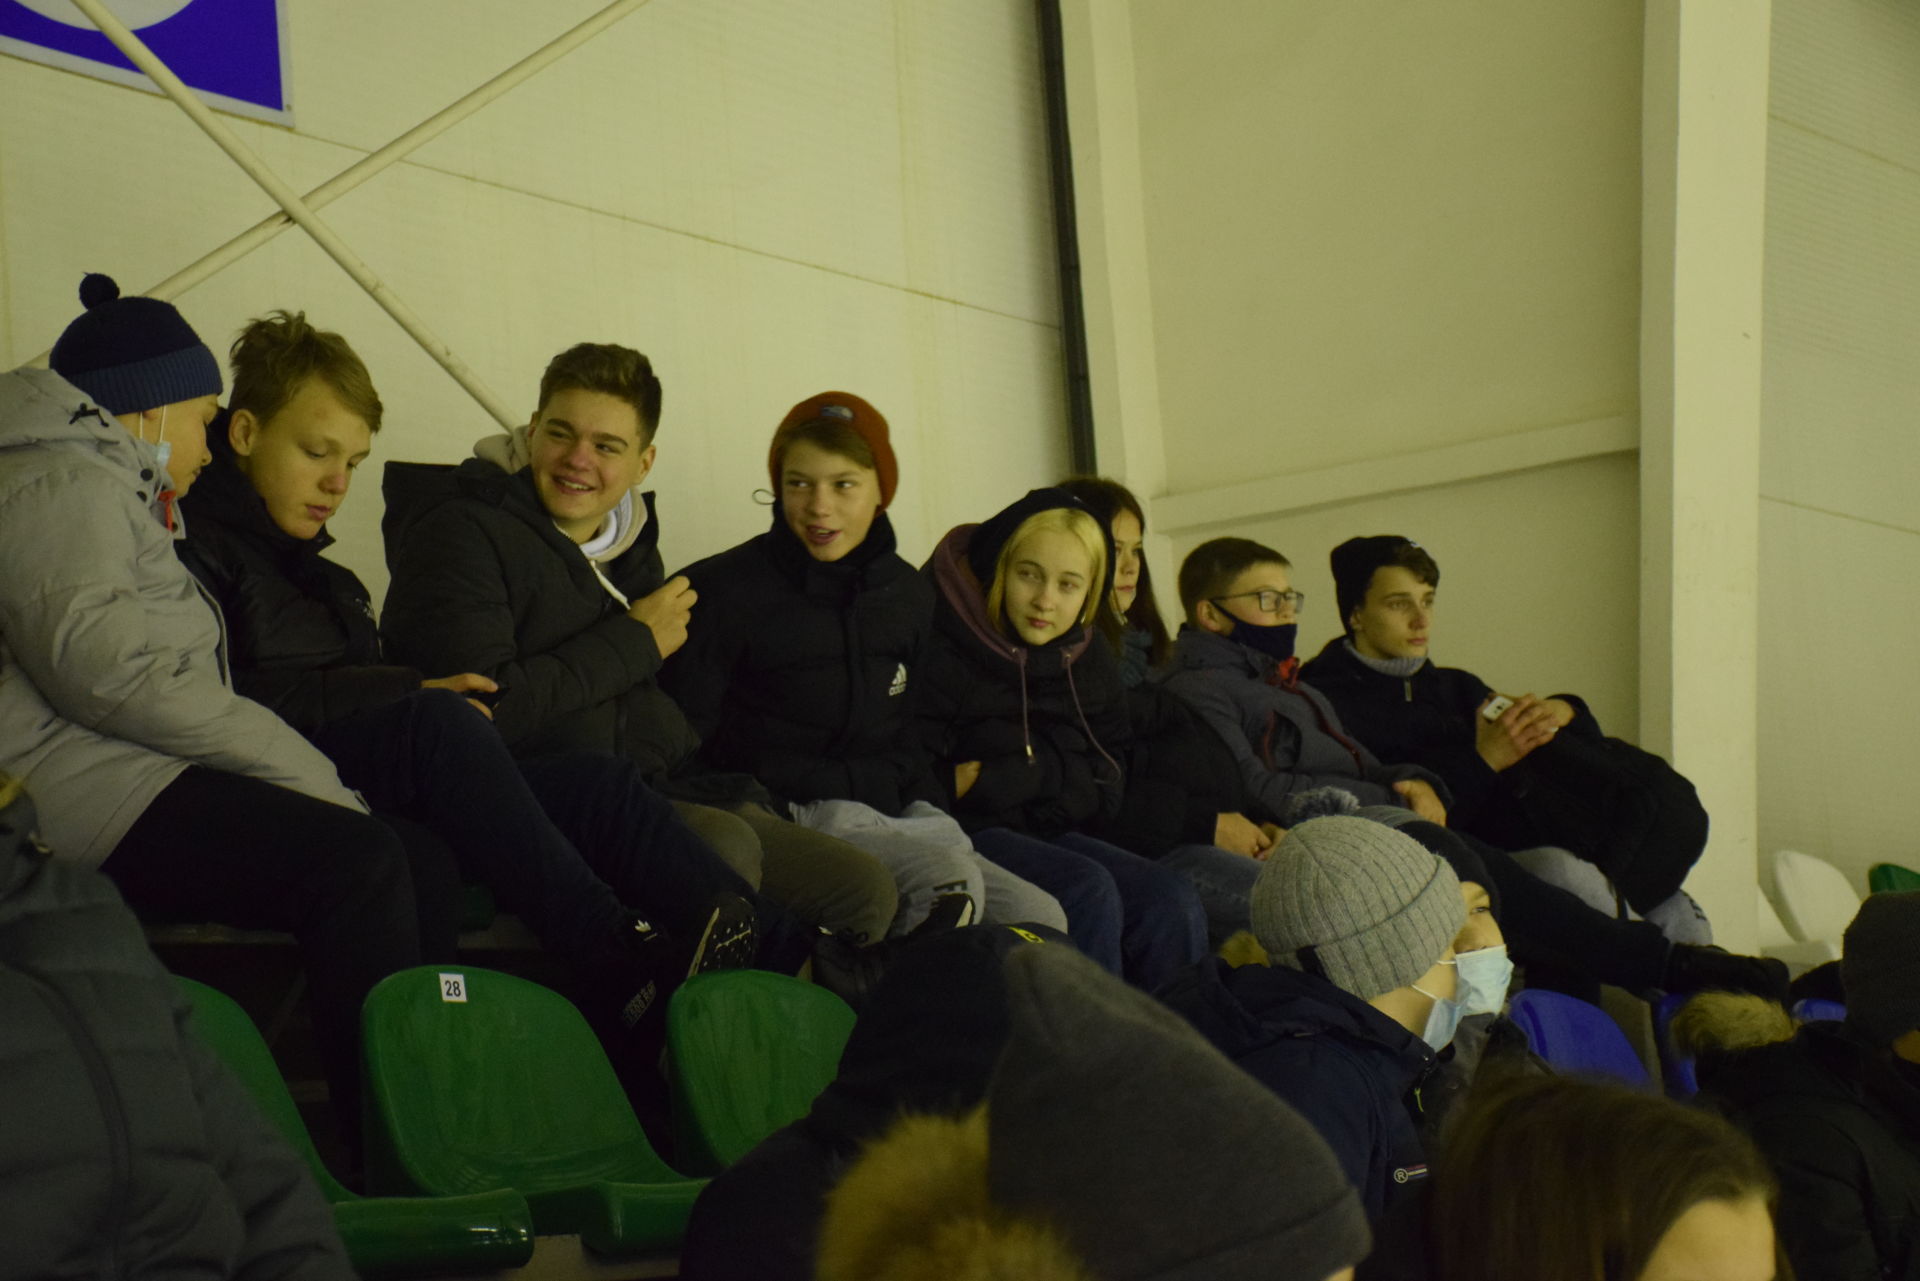 Хоккейная команда «Ледок» встретилась на льду со сборной из Самарской области